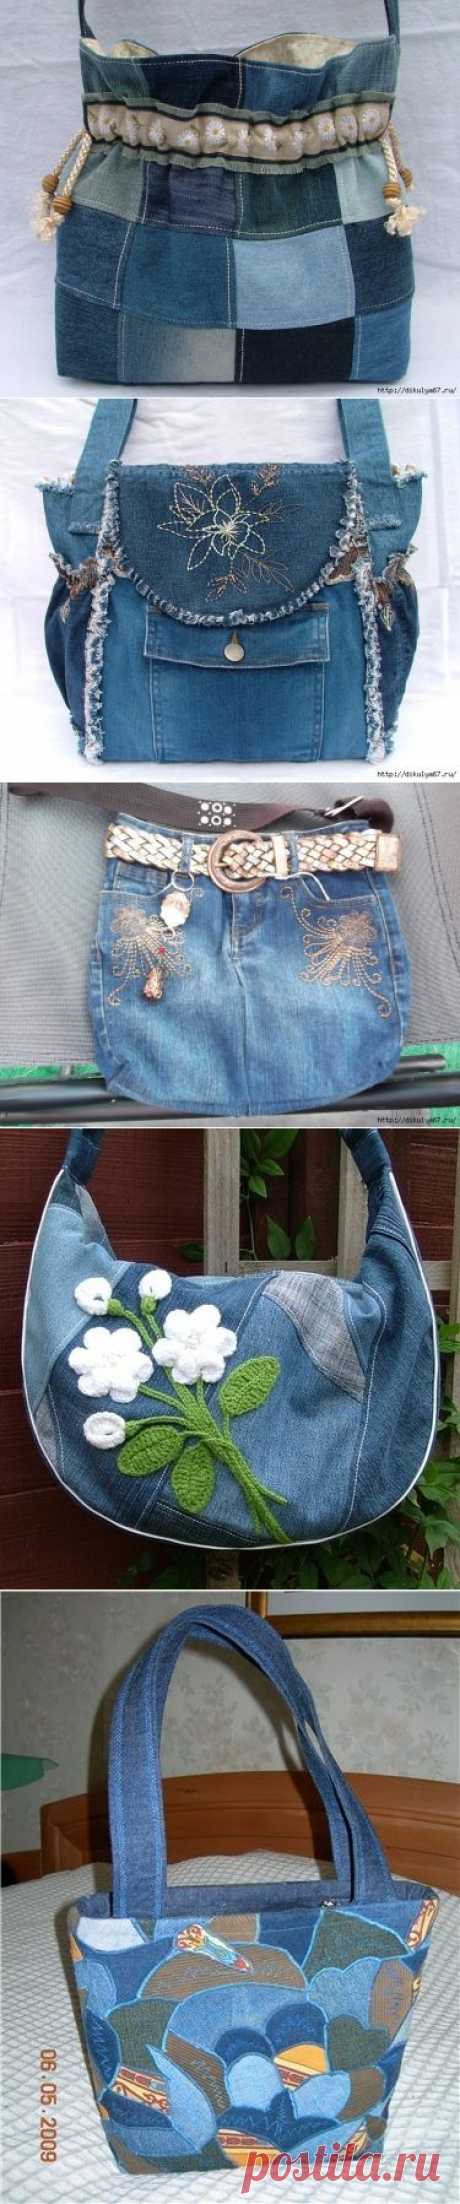 Джинсовые переделки - сумка из джинсов